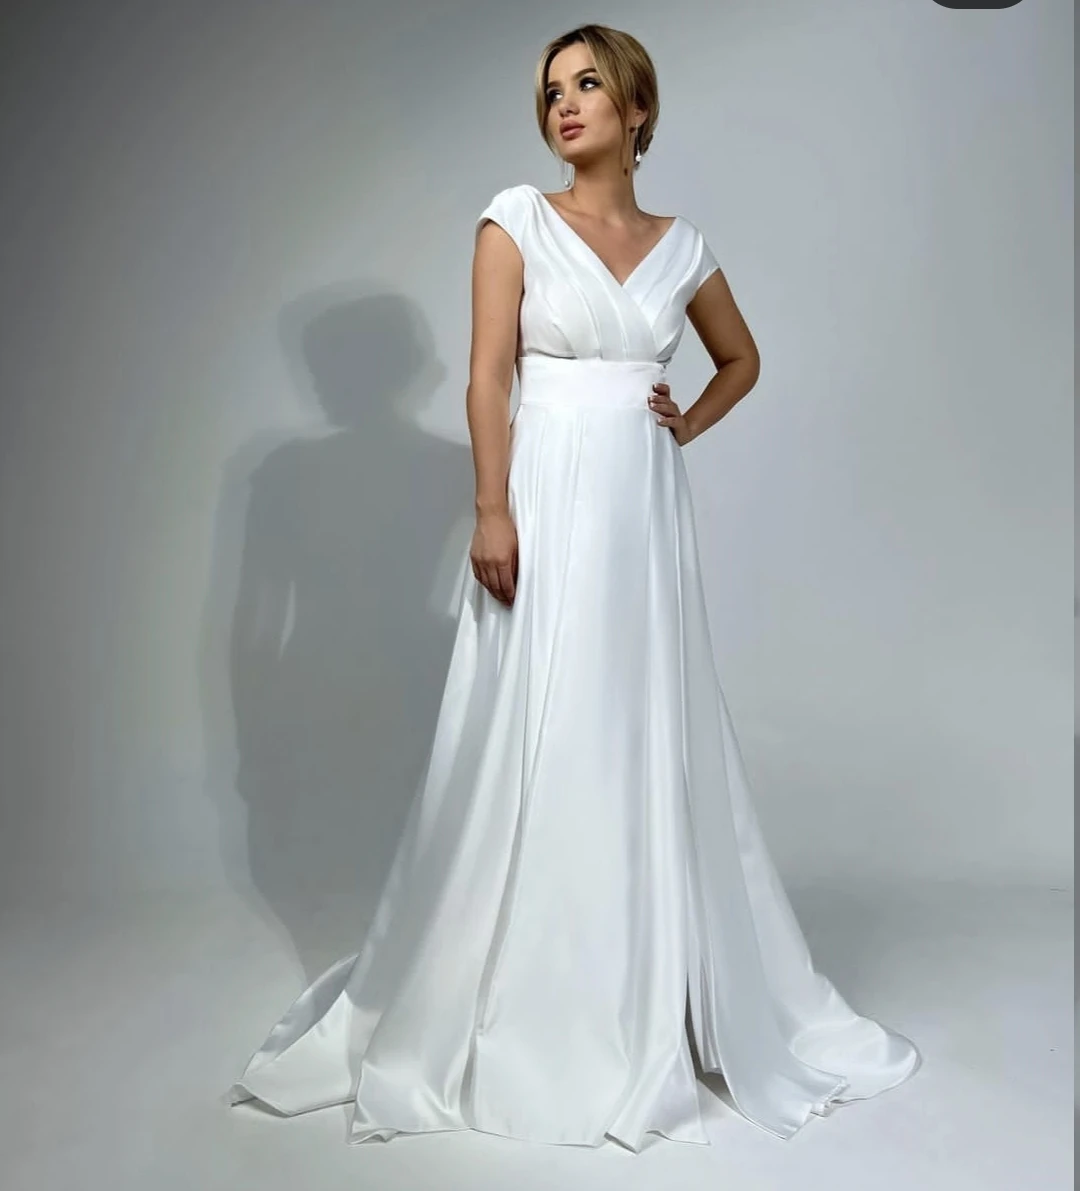 

Женское атласное платье с V-образным вырезом, белое простое ТРАПЕЦИЕВИДНОЕ свадебное платье до пола, индивидуальный пошив